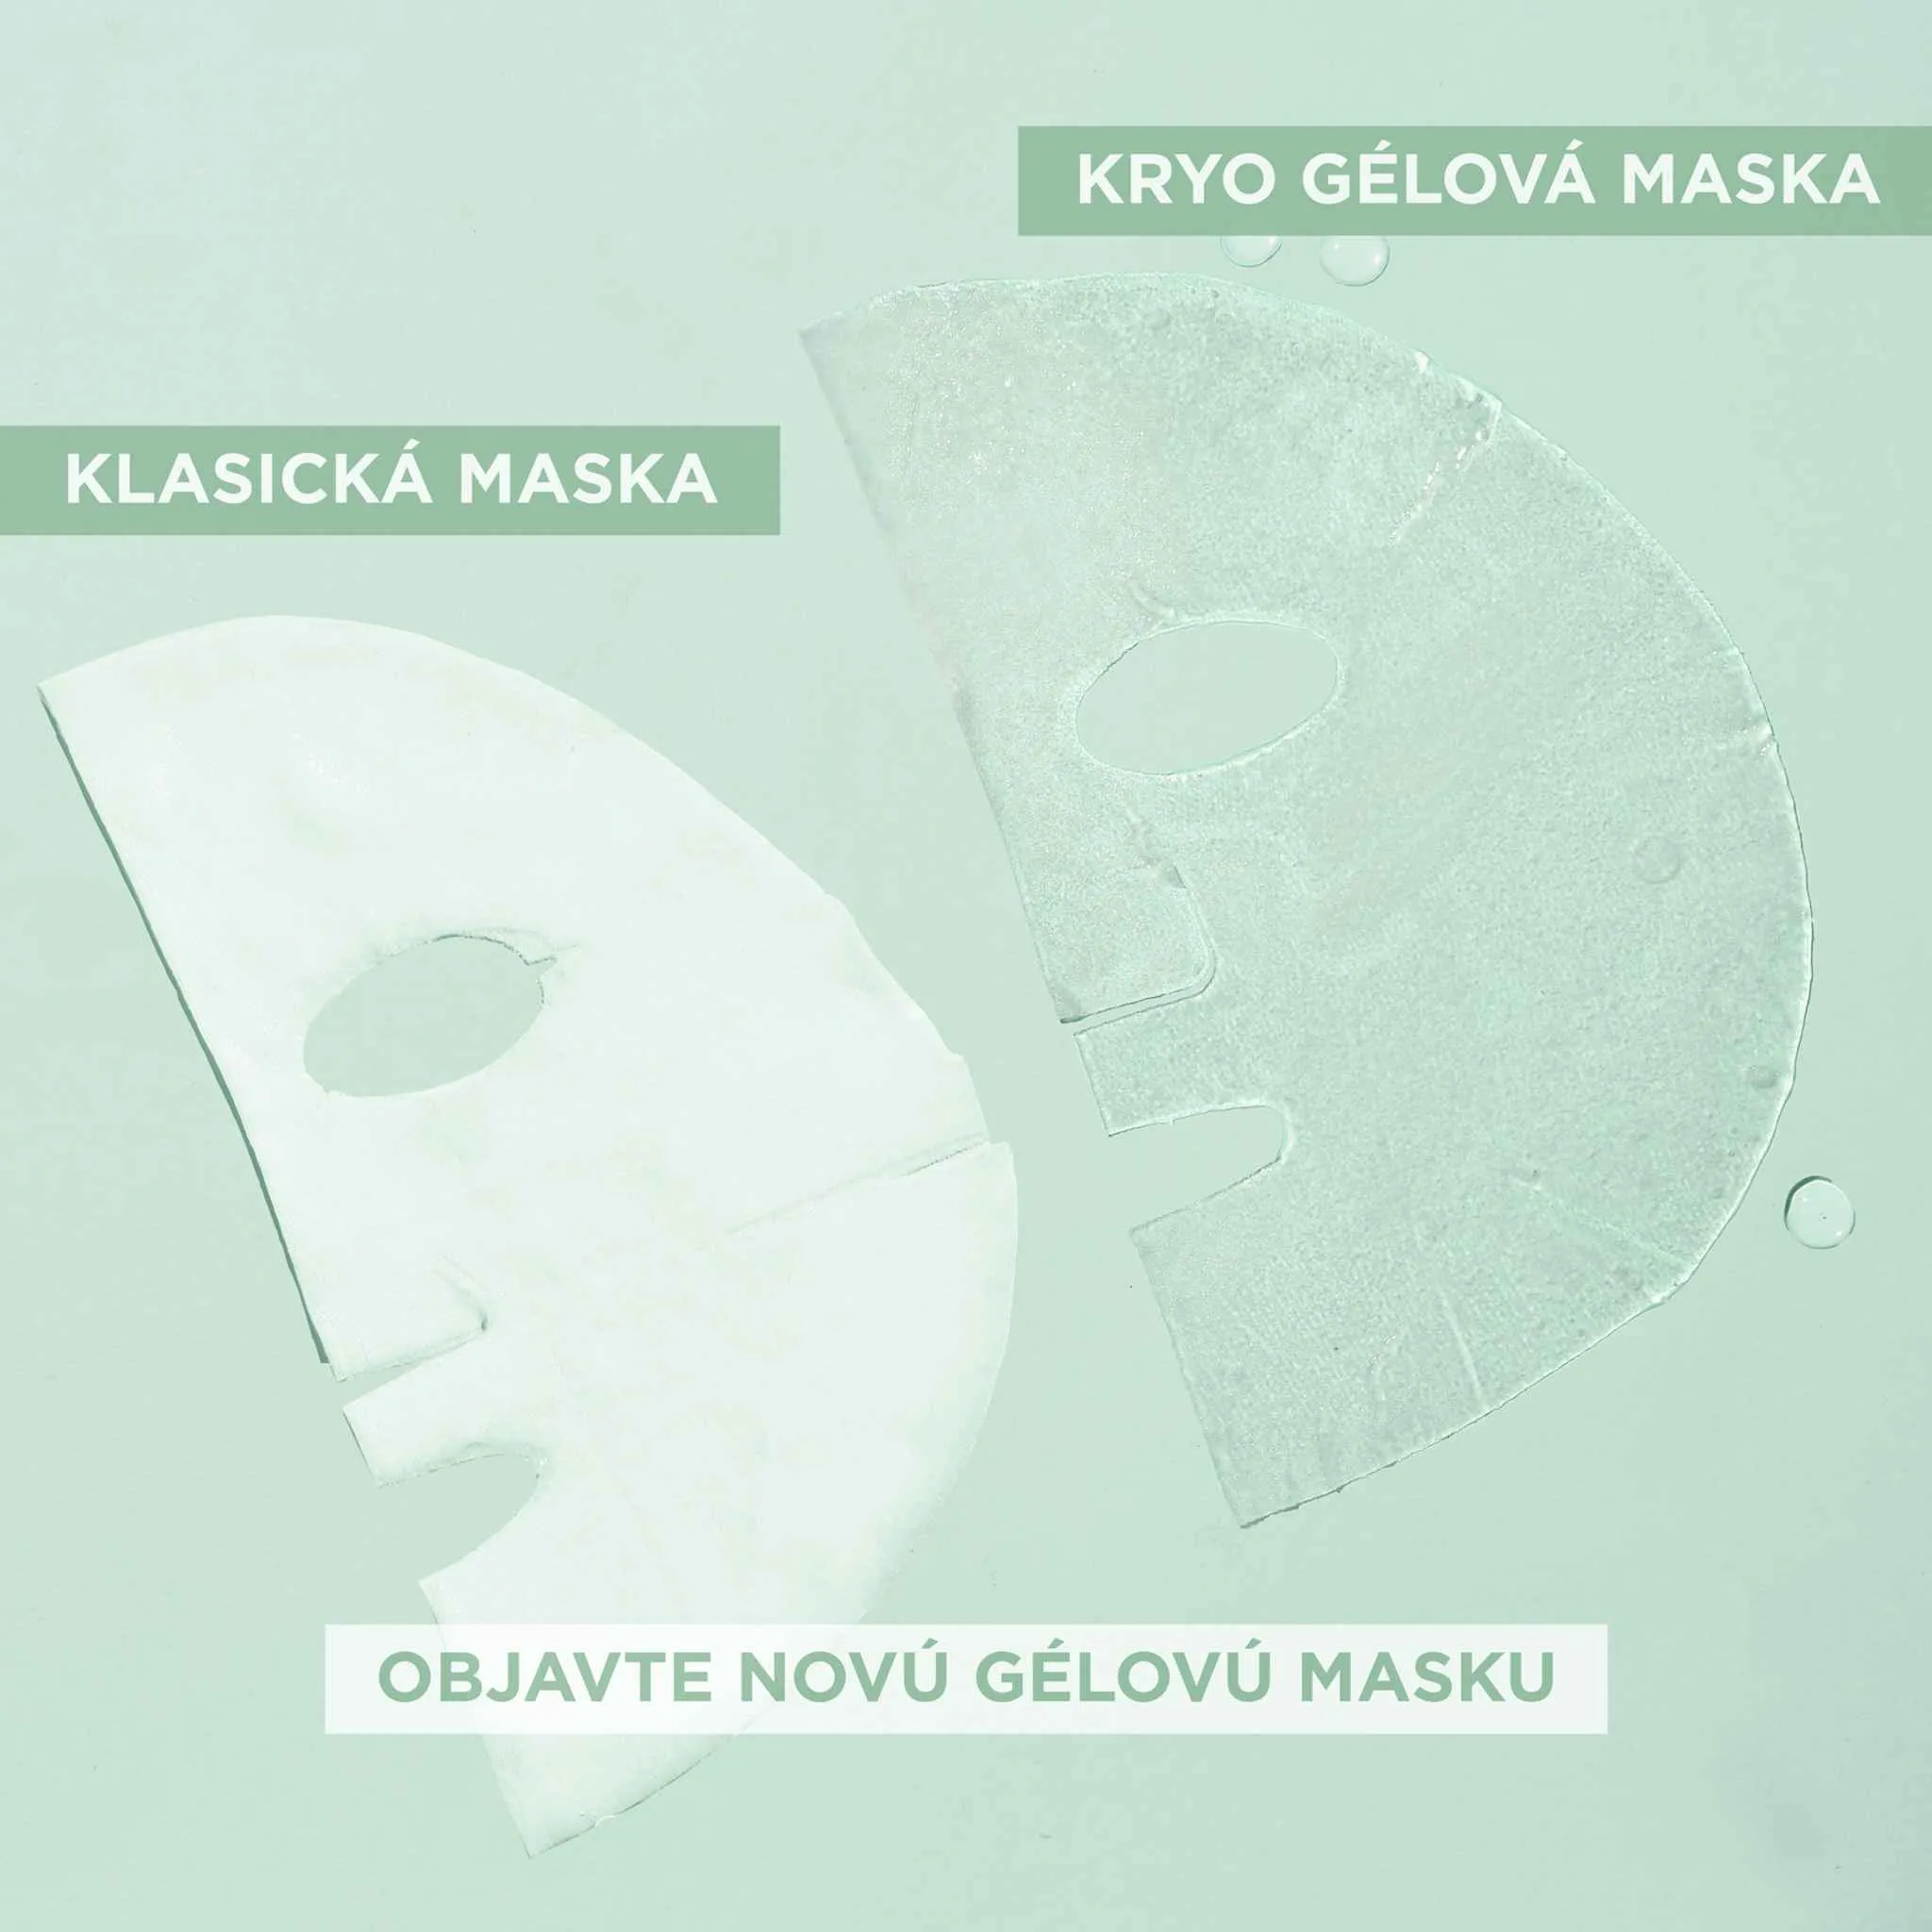 Garnier Cryo Jelly textilná pleťová maska s chladivým efektom -7 °C, 27 g 1×27 g, pleťová maska